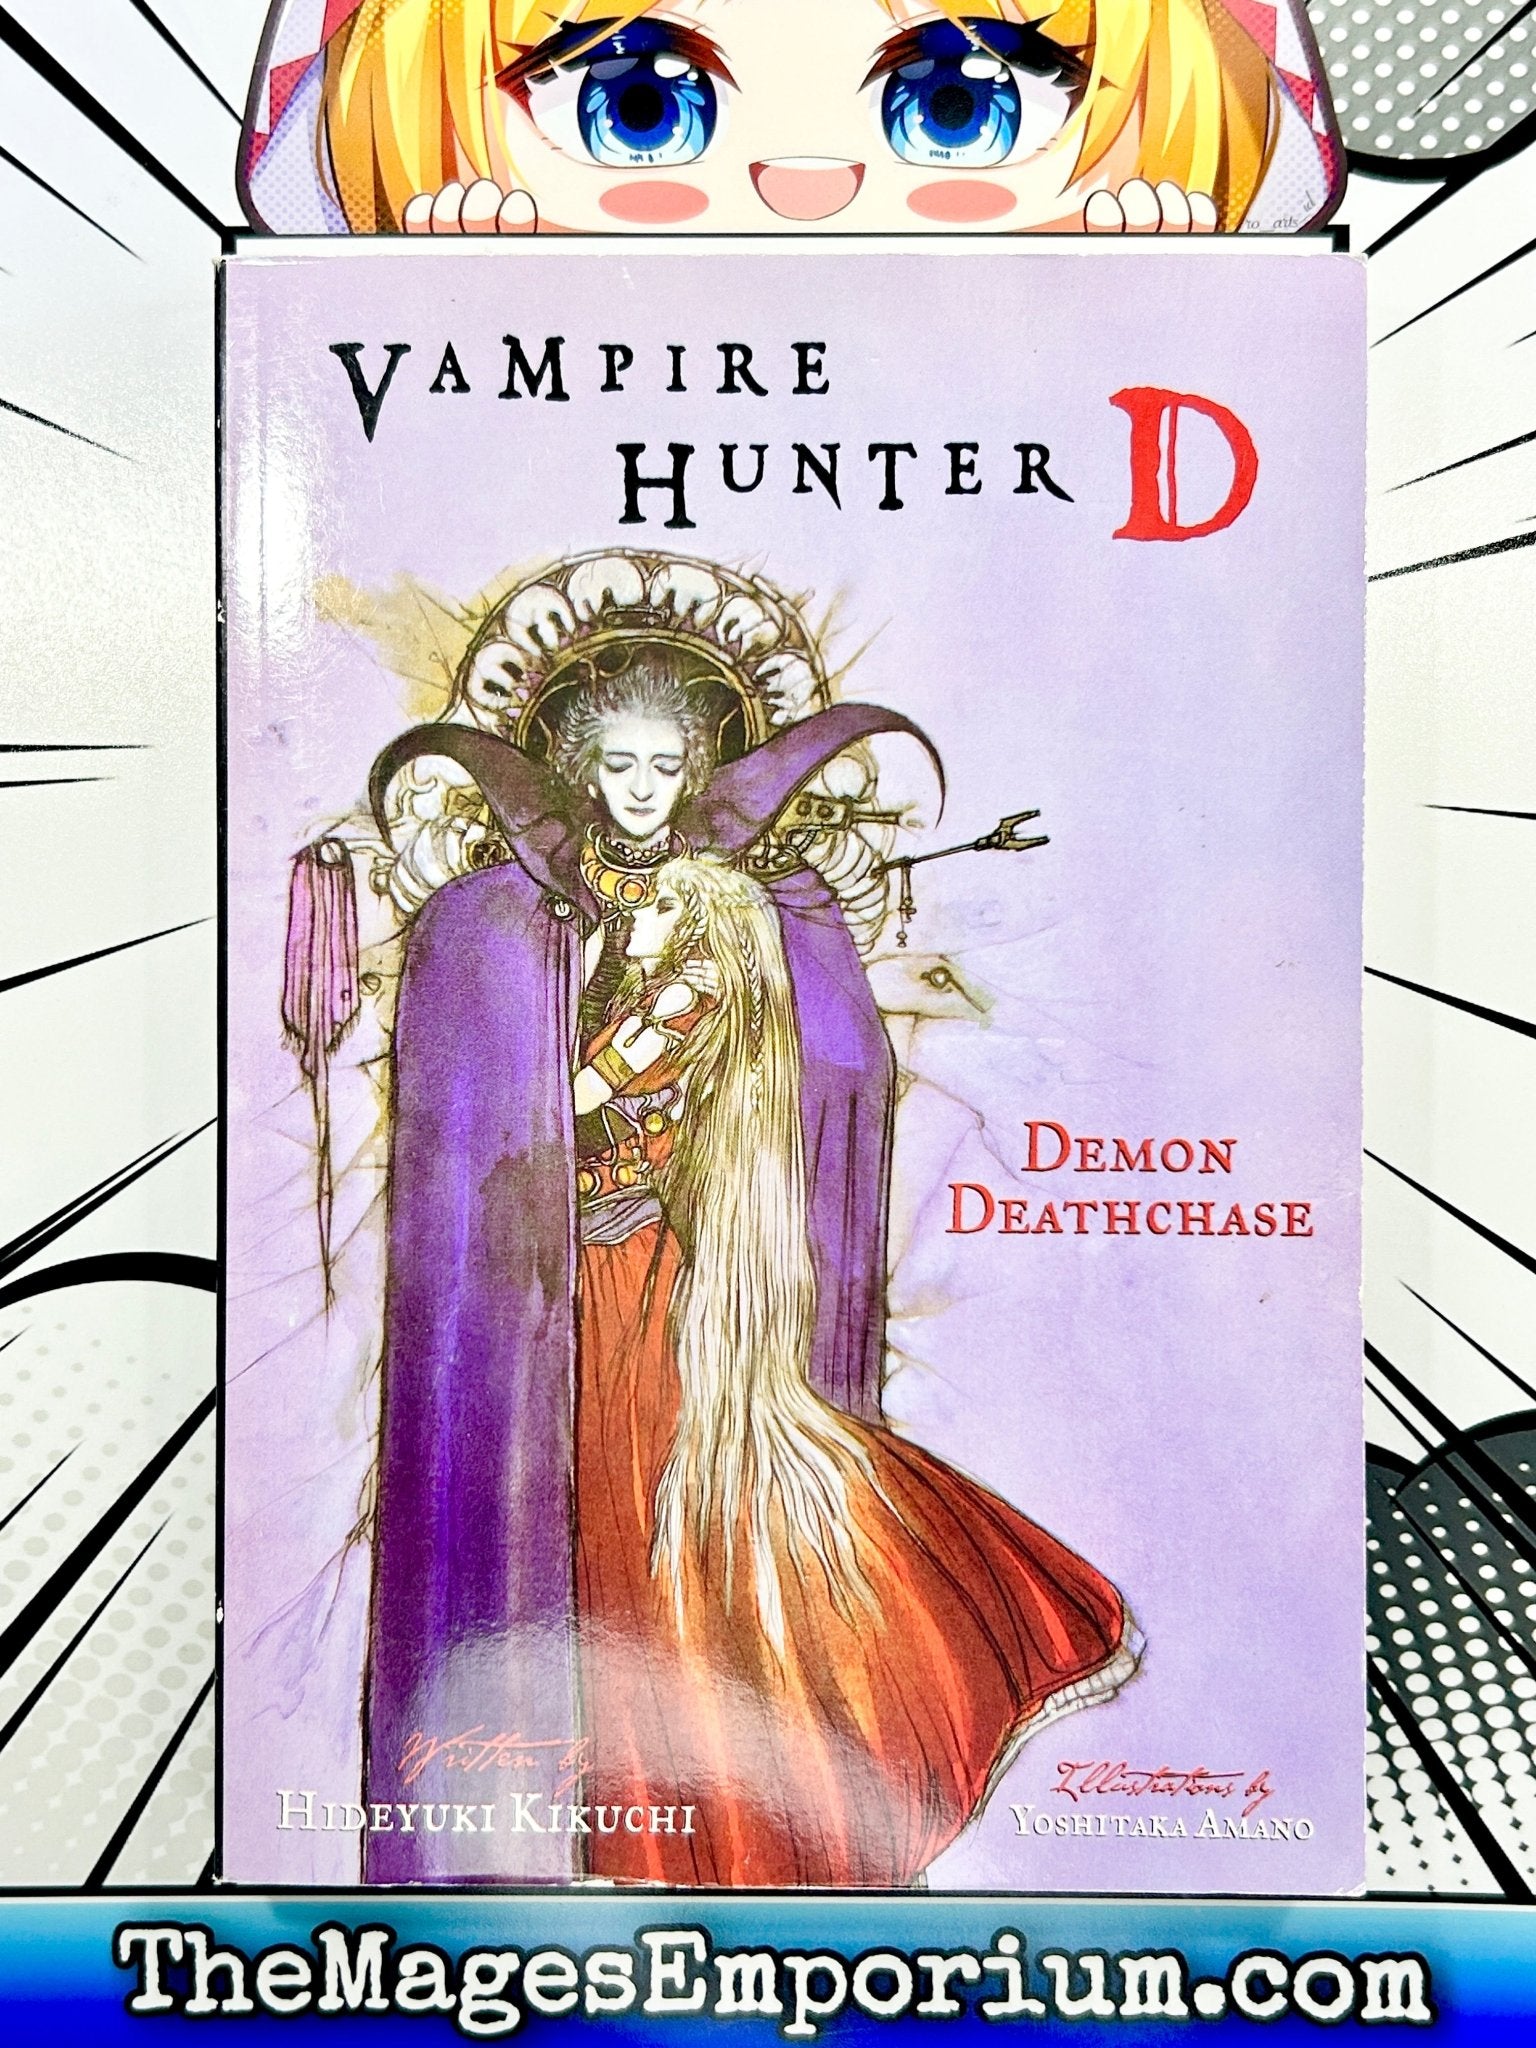 Vampire Hunter D Novel Omnibus Volume 3